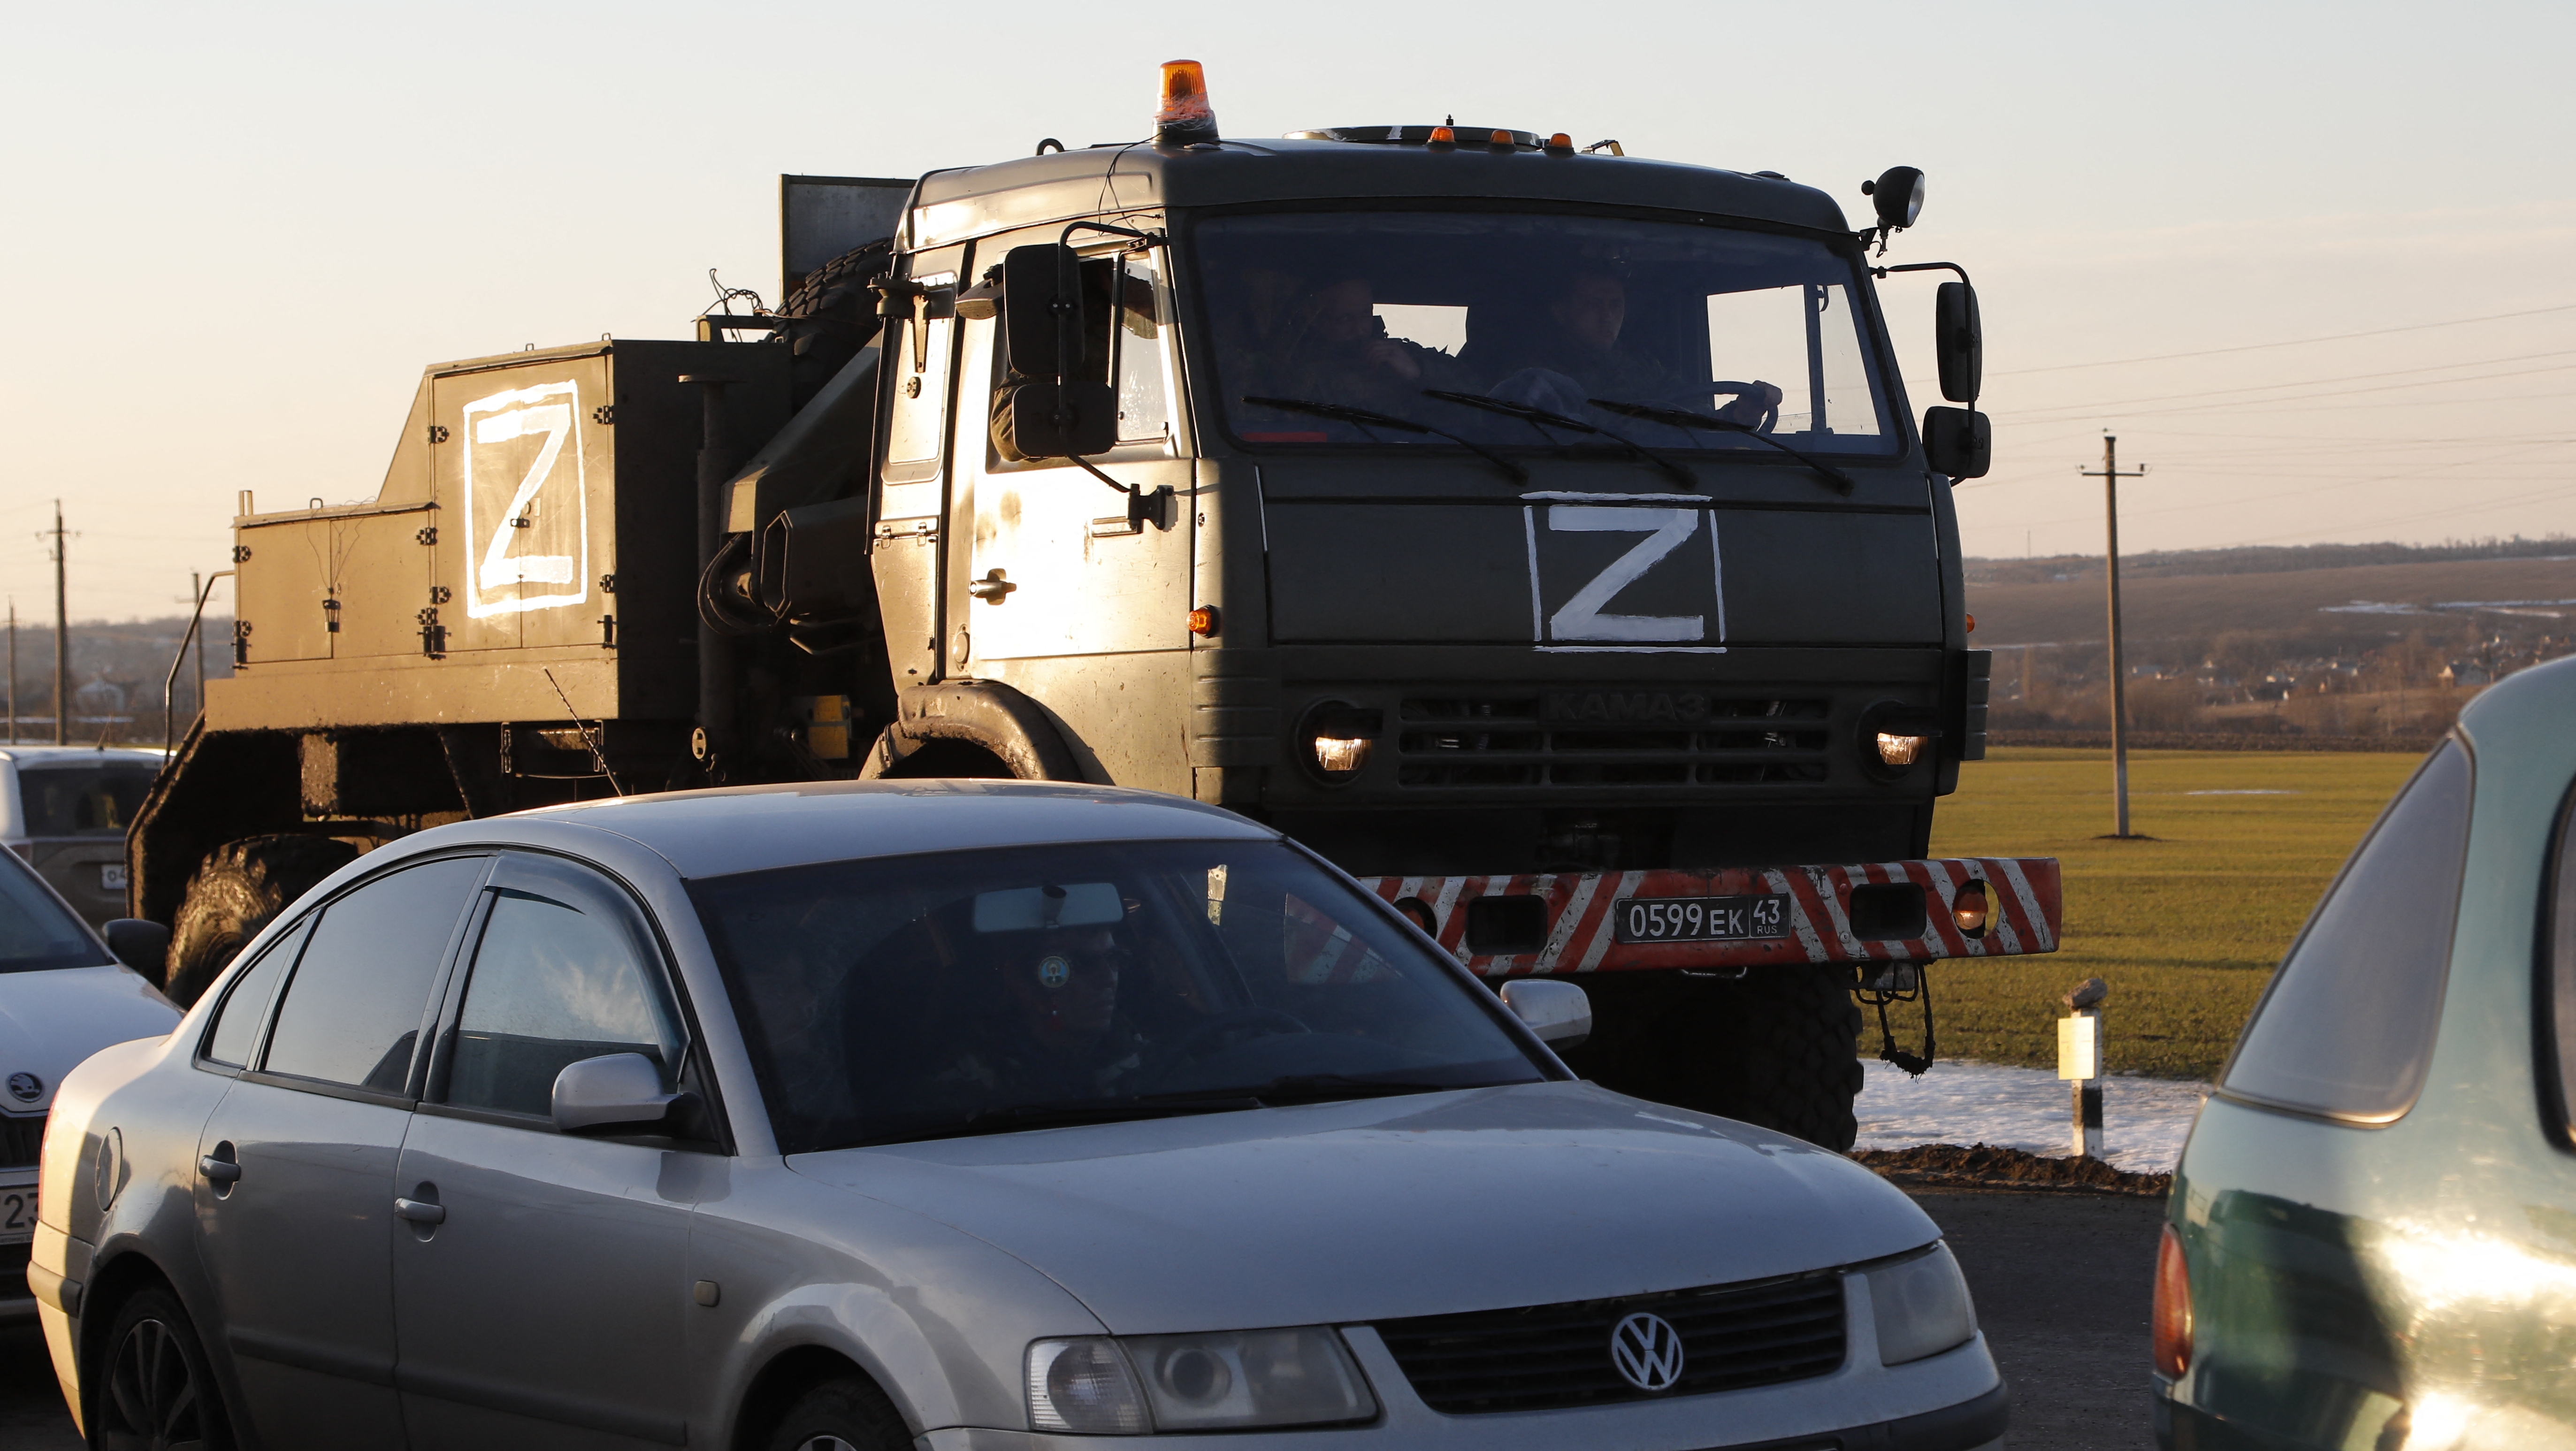 Összeverekedett egy ukrán és egy magyar autós Tatán az orosz inváziót jelképező Z betű miatt